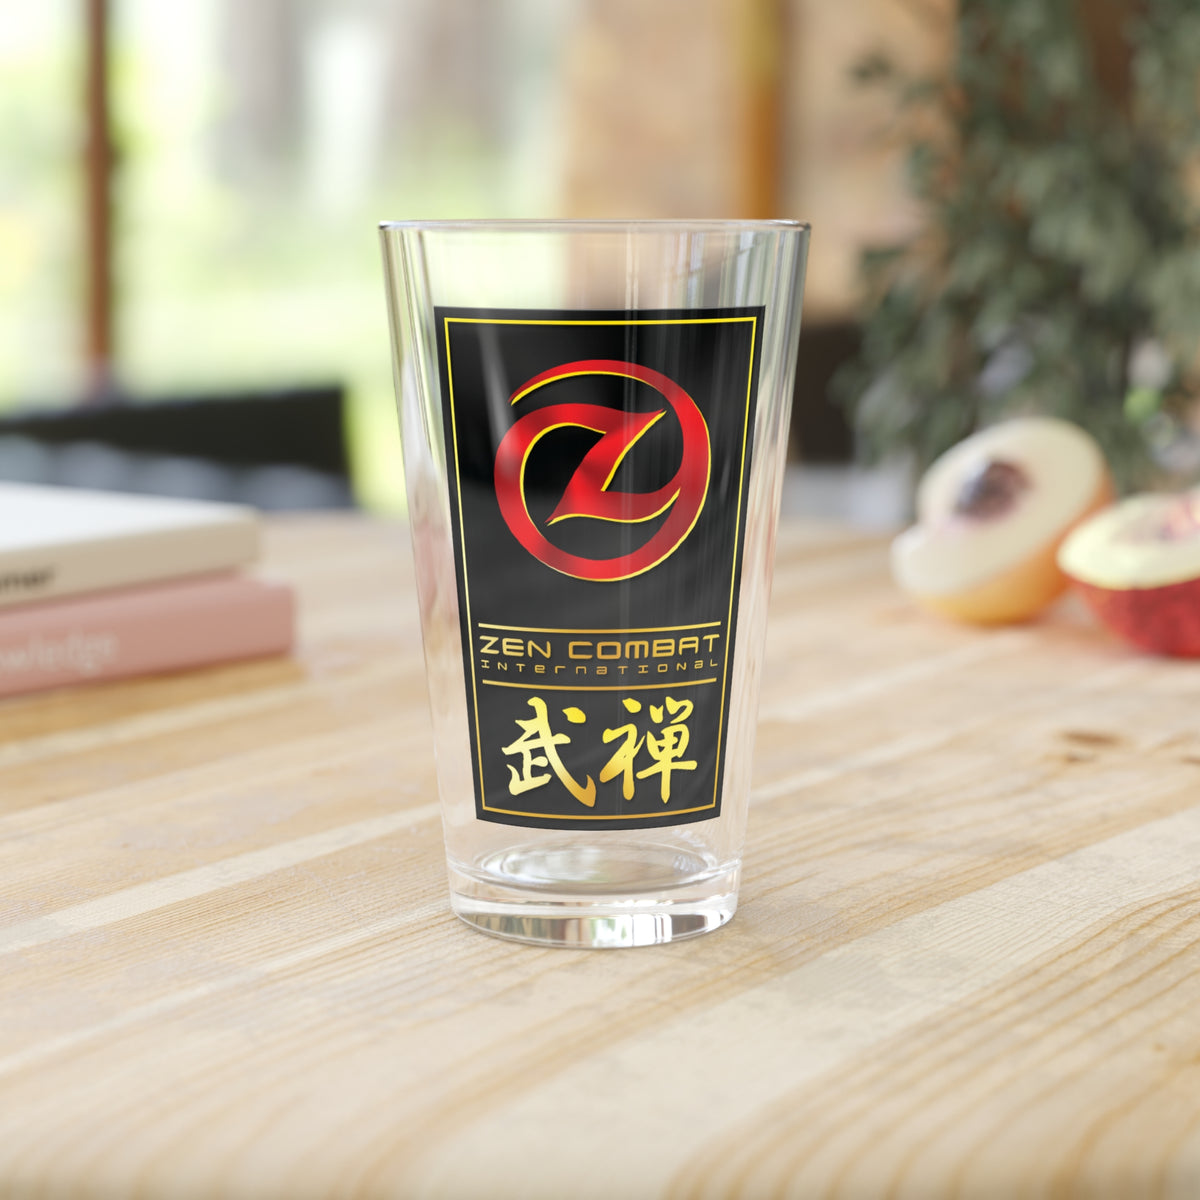 Zen Combat Gold Banner Pint Glass, 16oz